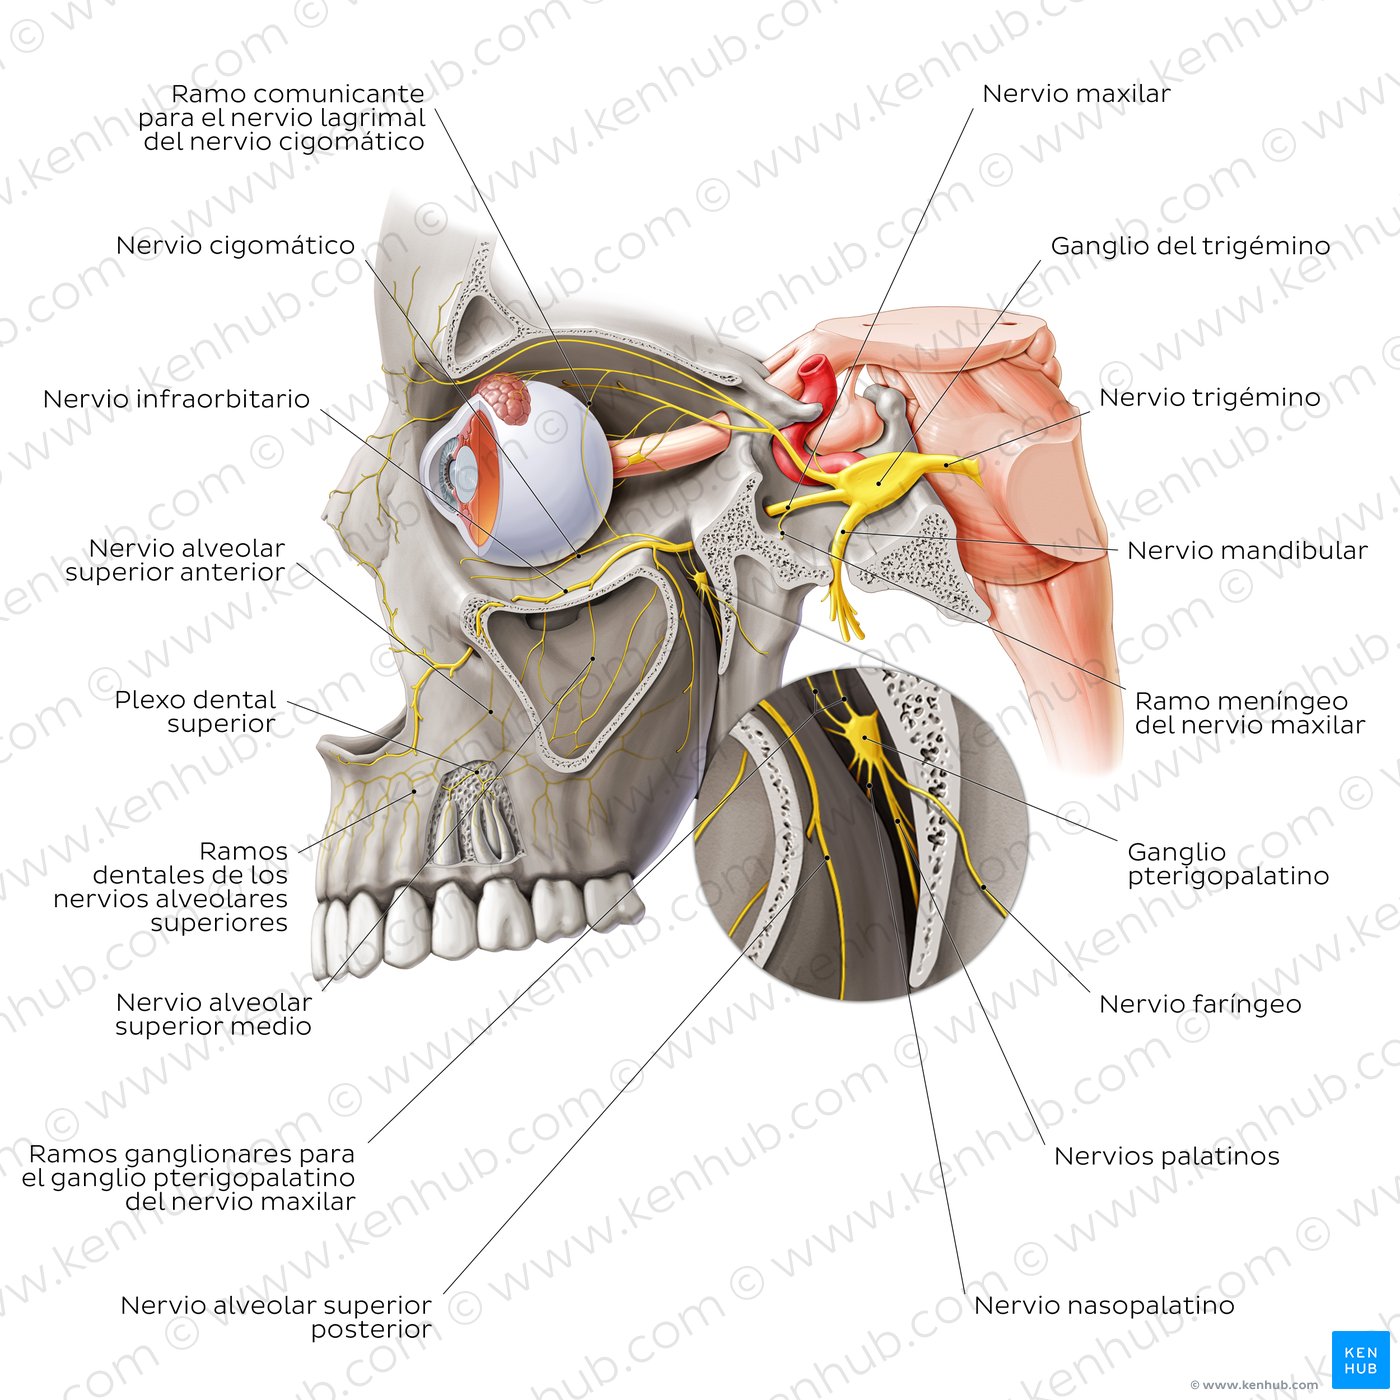 División maxilar del nervio trigémino (V2)